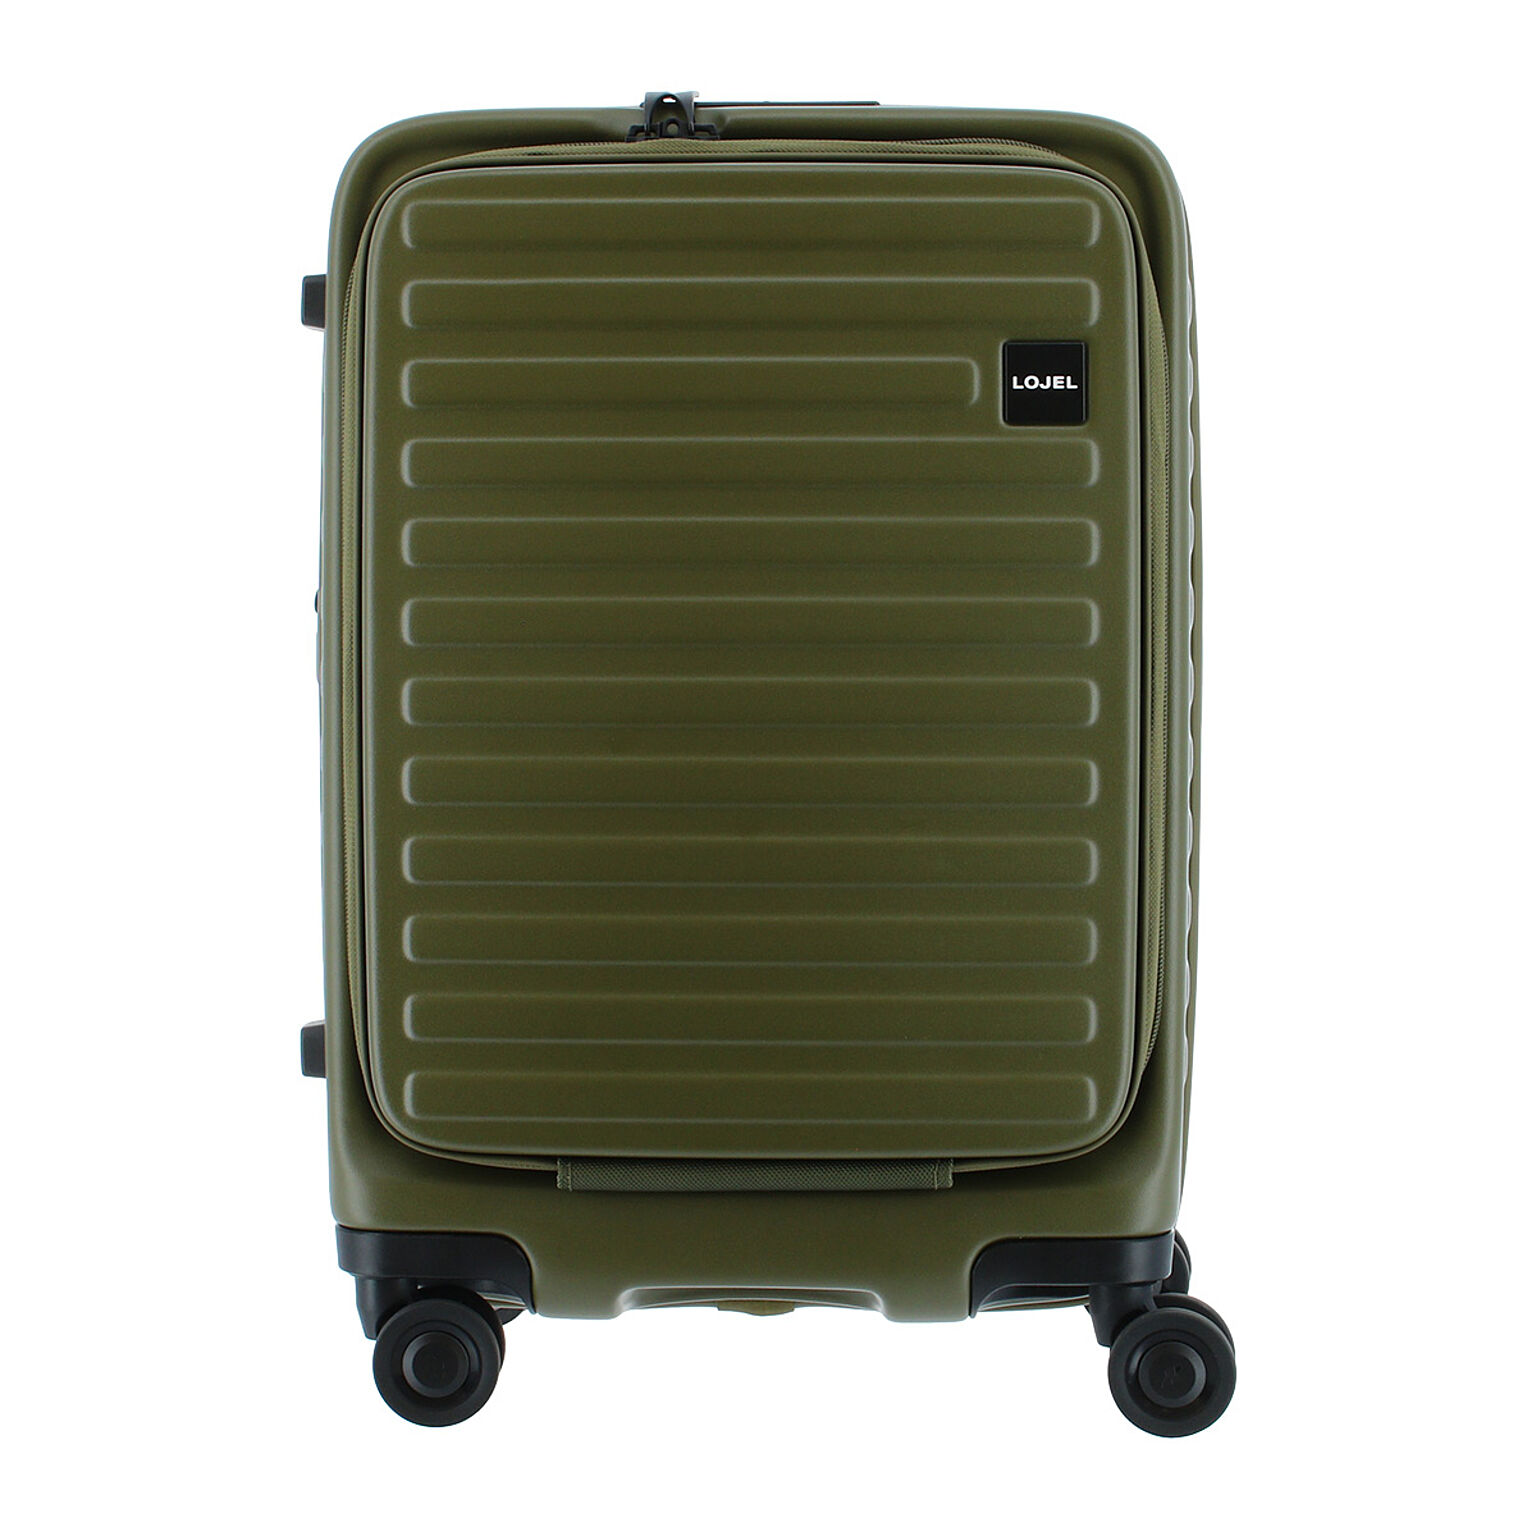 ロジェール LOJEL スーツケース CUBO-S 50.5cm キャリーケース キャリーバッグ ビジネスキャリー 機内持ち込み可能 拡張機能 エキスパンダブル